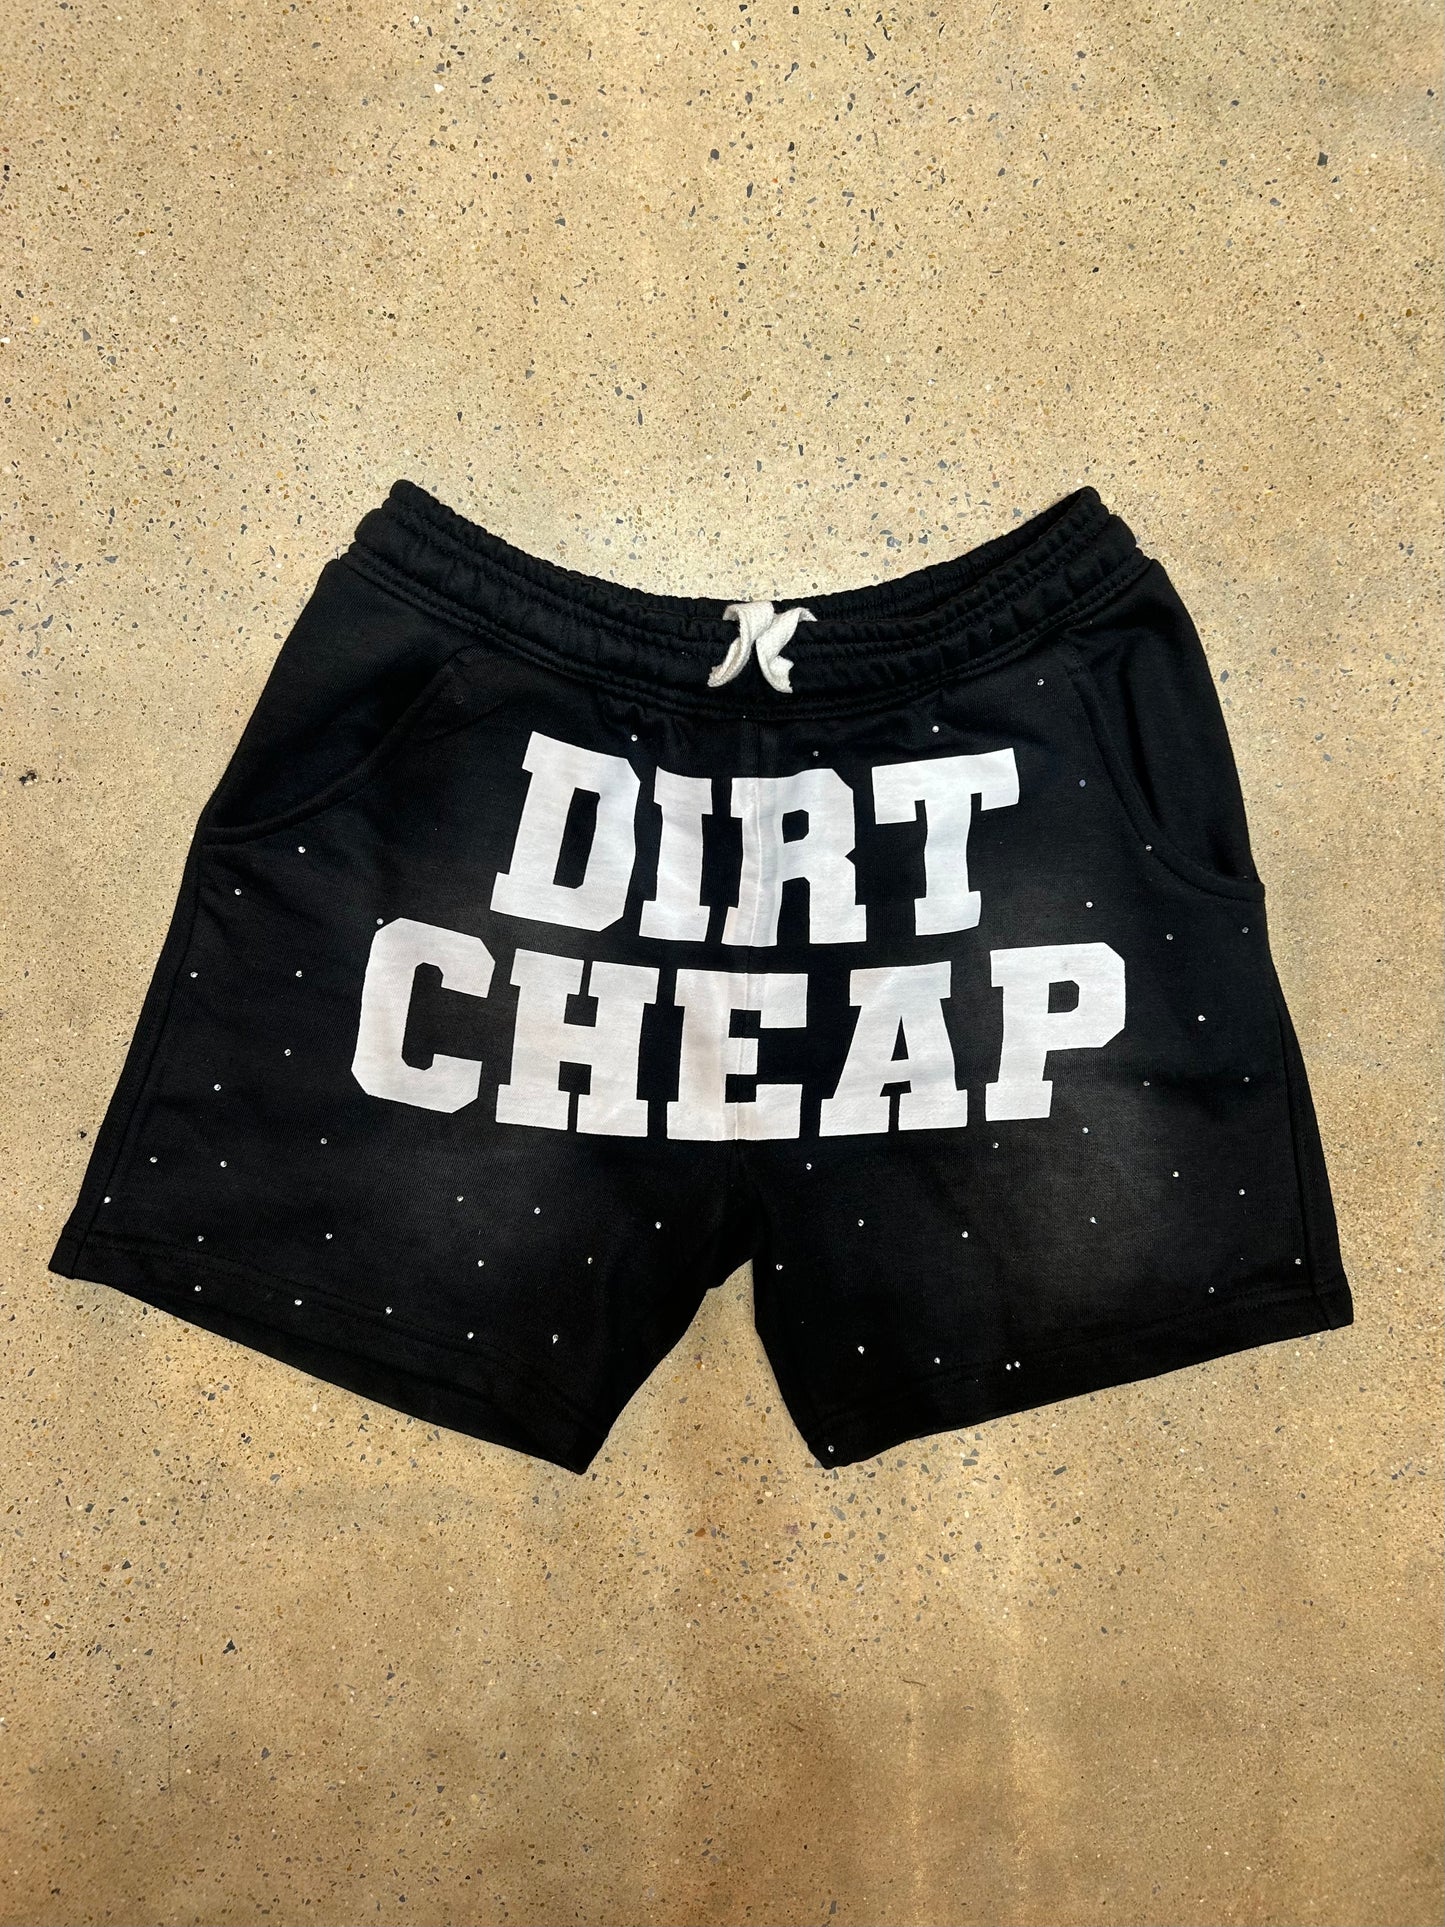 Dirt cheap shorts